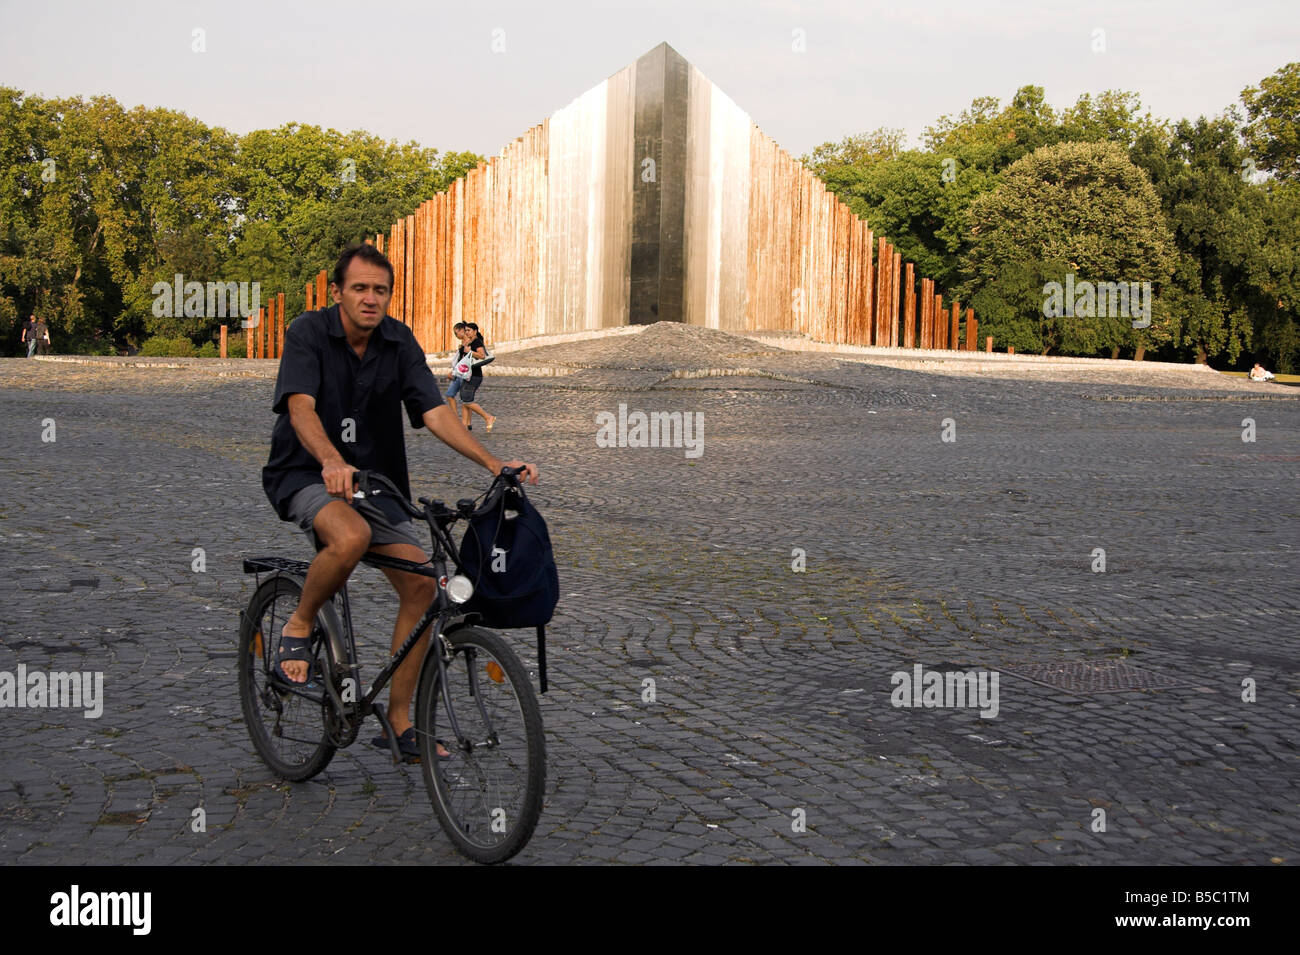 Mann auf einem Fahrrad, Denkmal, ungarische Revolution von 1956, Pest, Budapest, Ungarn Stockfoto